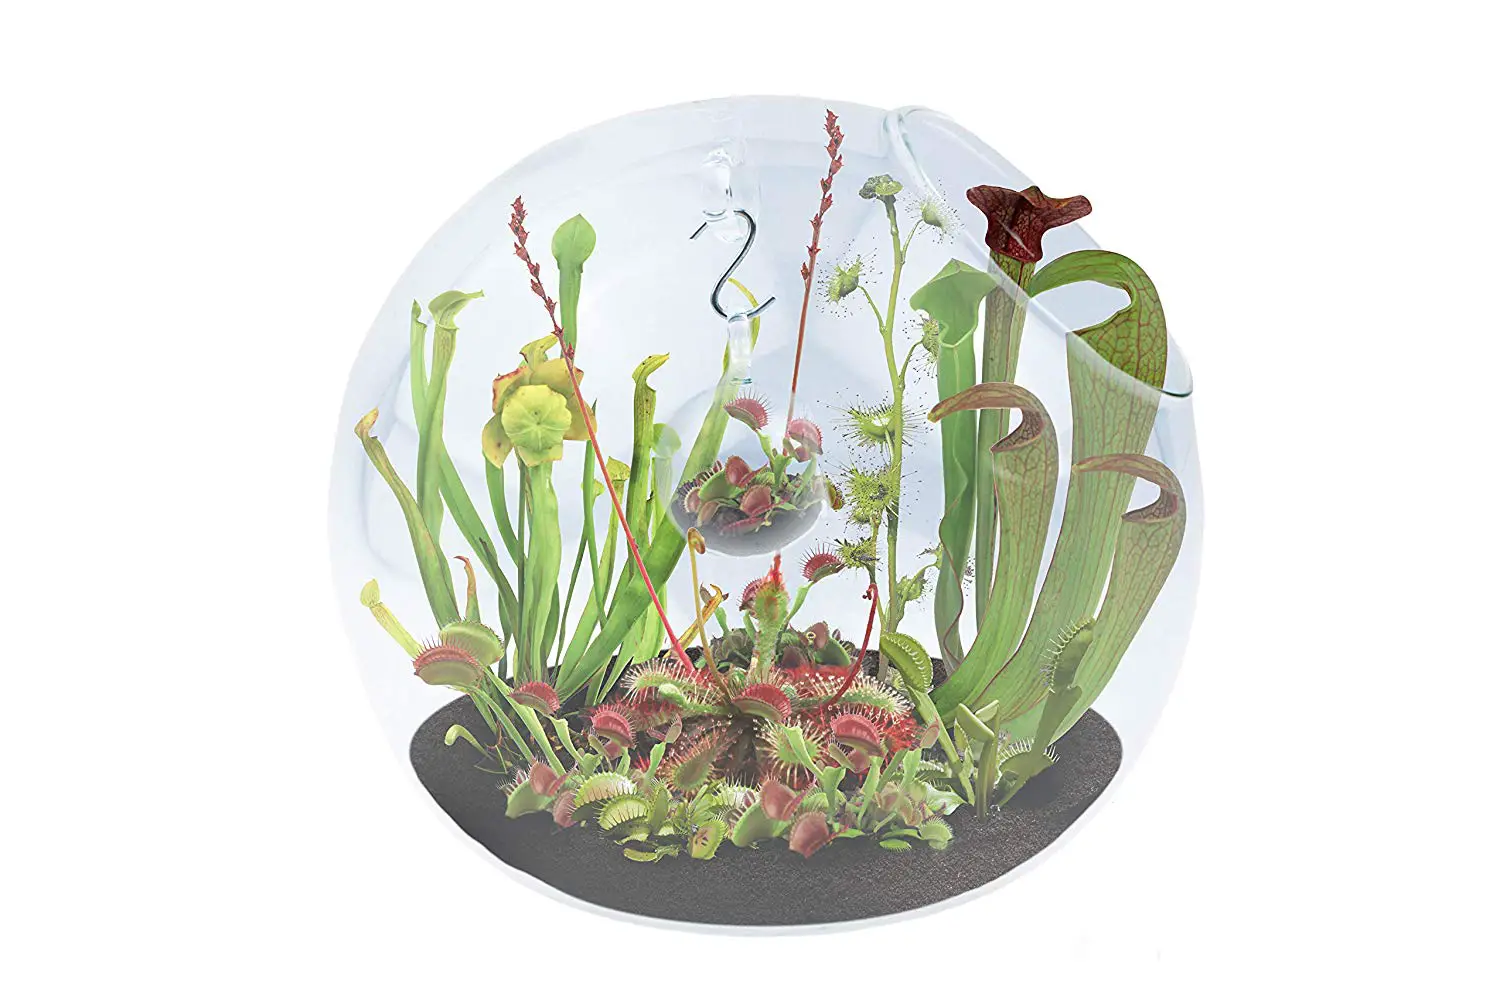 Carnivorous plant terrarium